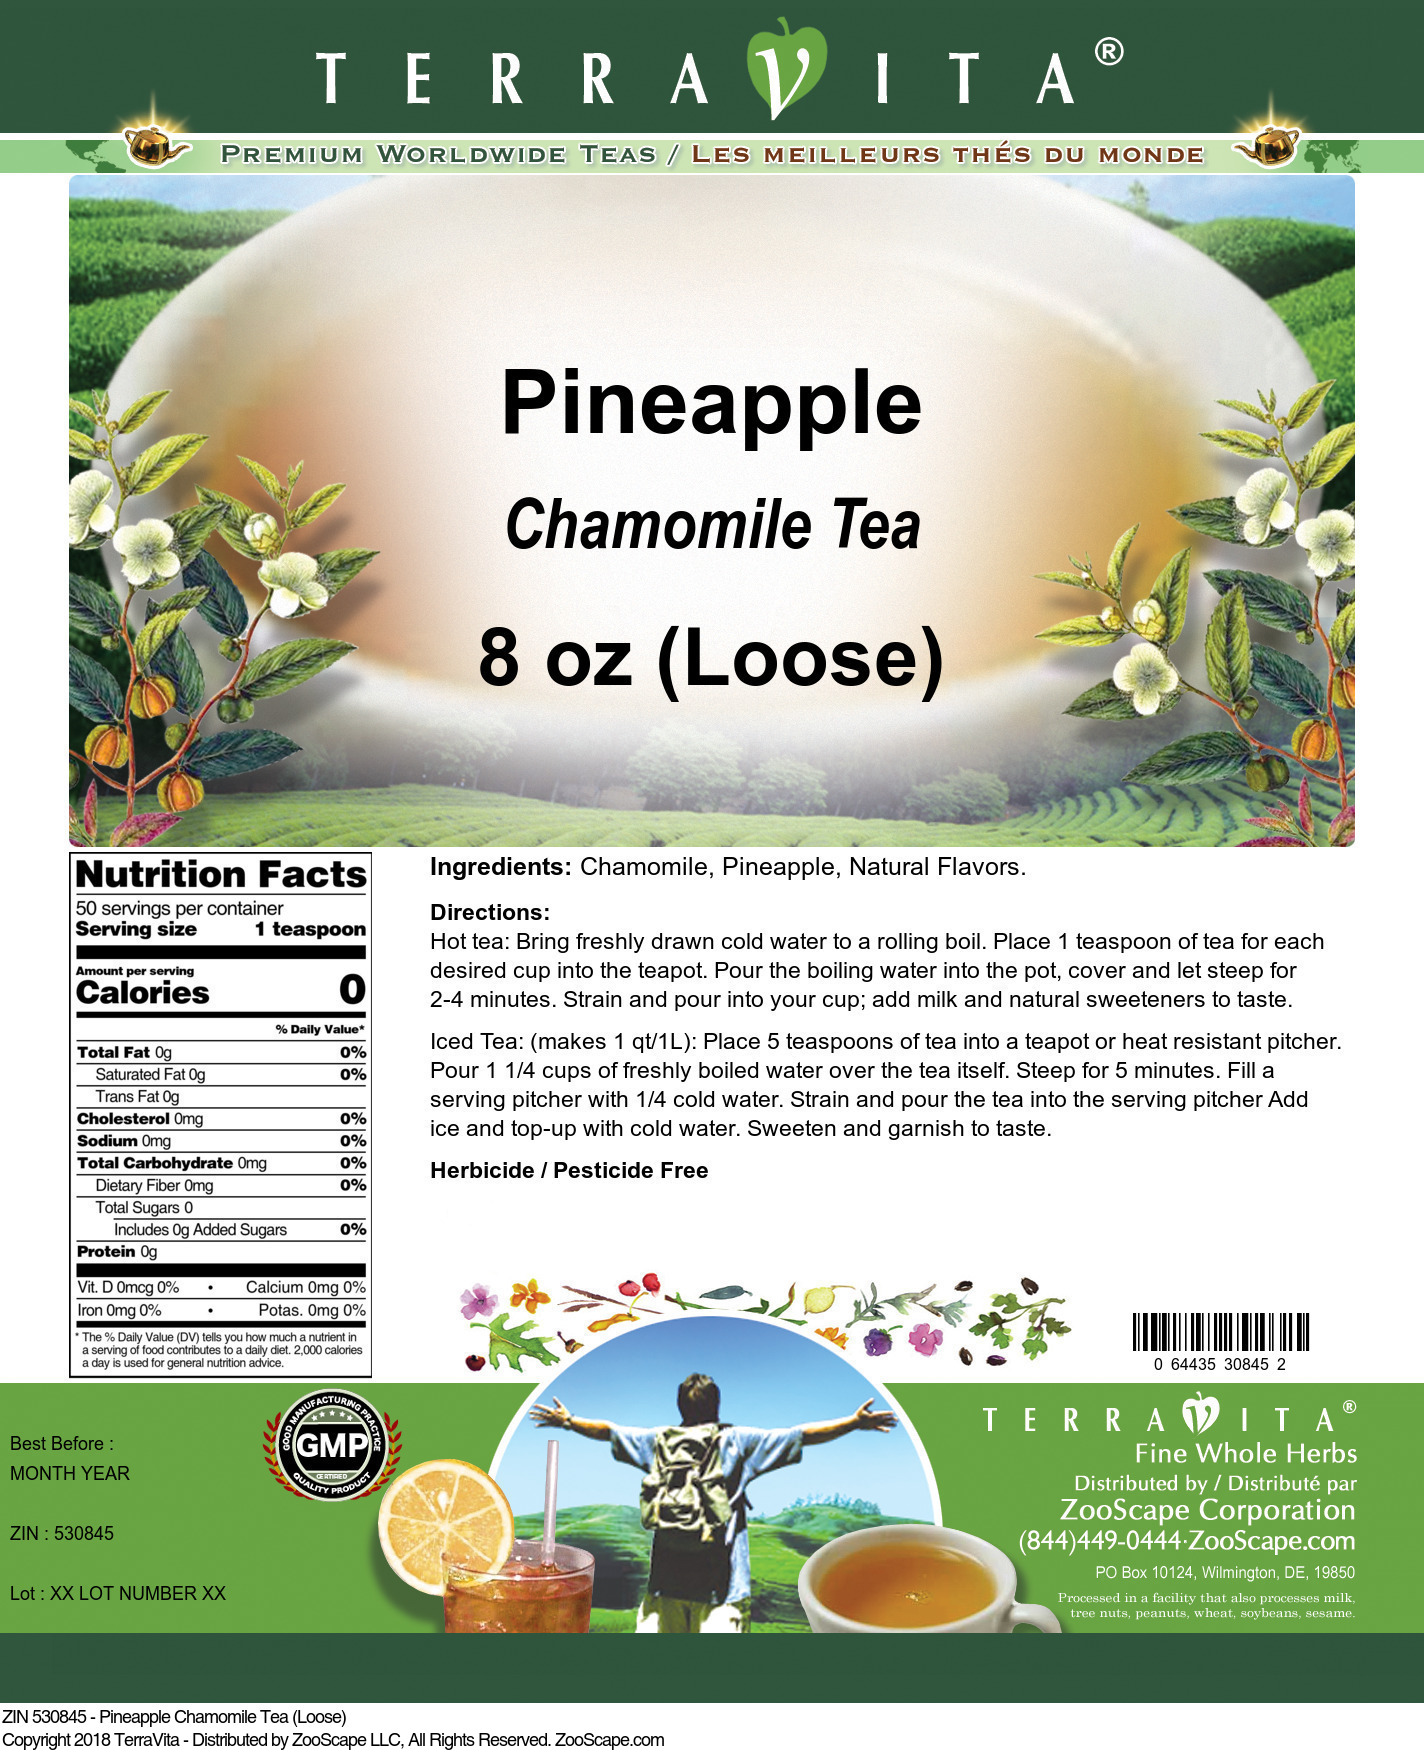 Pineapple Chamomile Tea (Loose) - Label